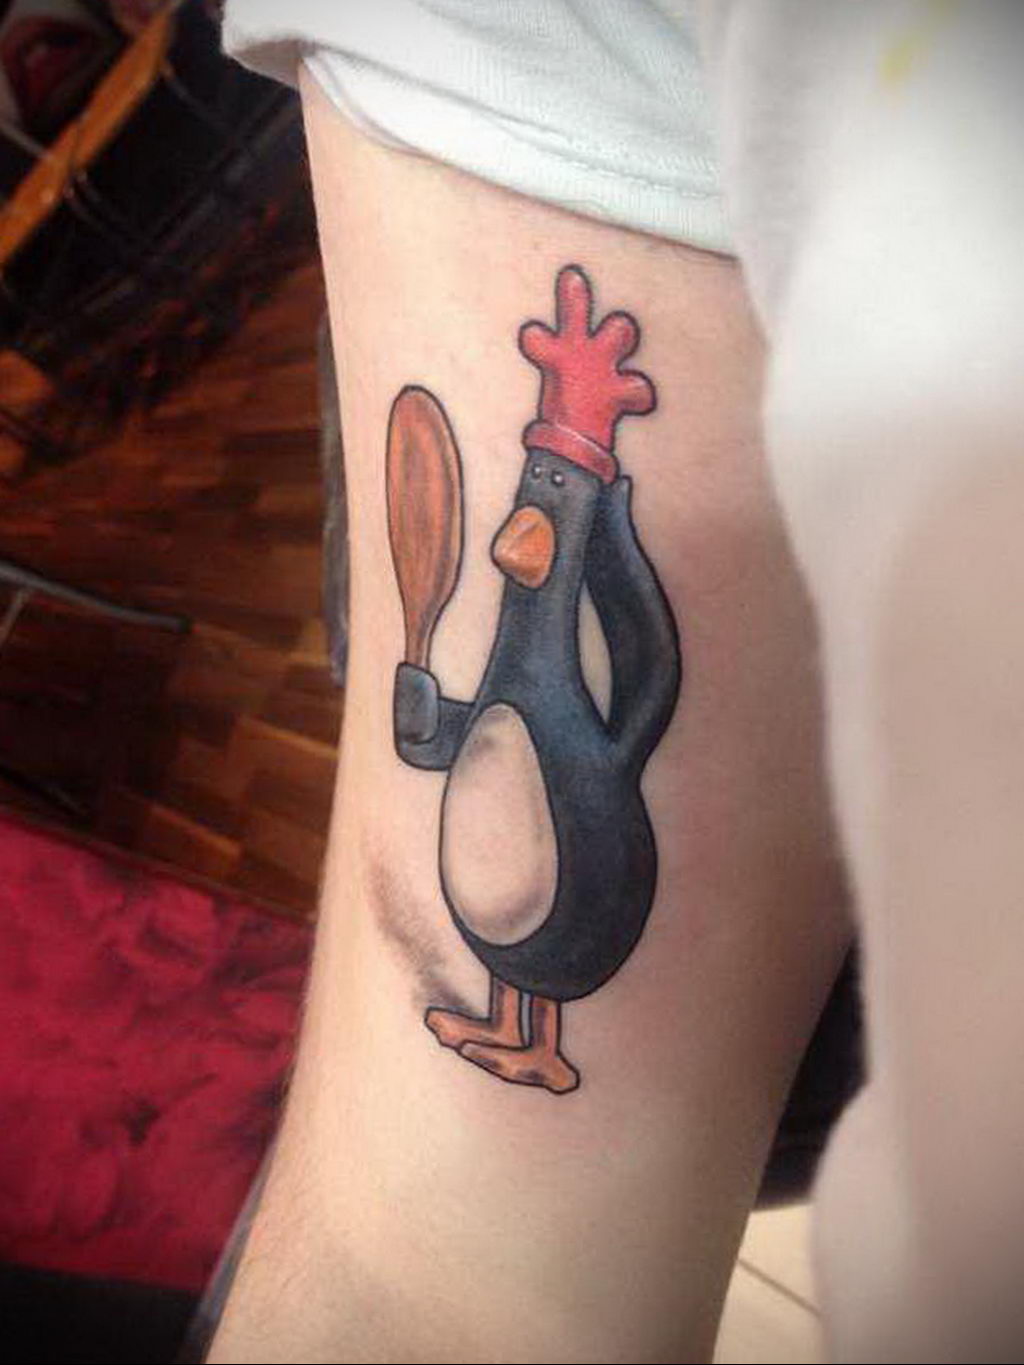 Chicken leg tattoo foto /002/XNUMX #XNUMX -chicken leg tattoos-   